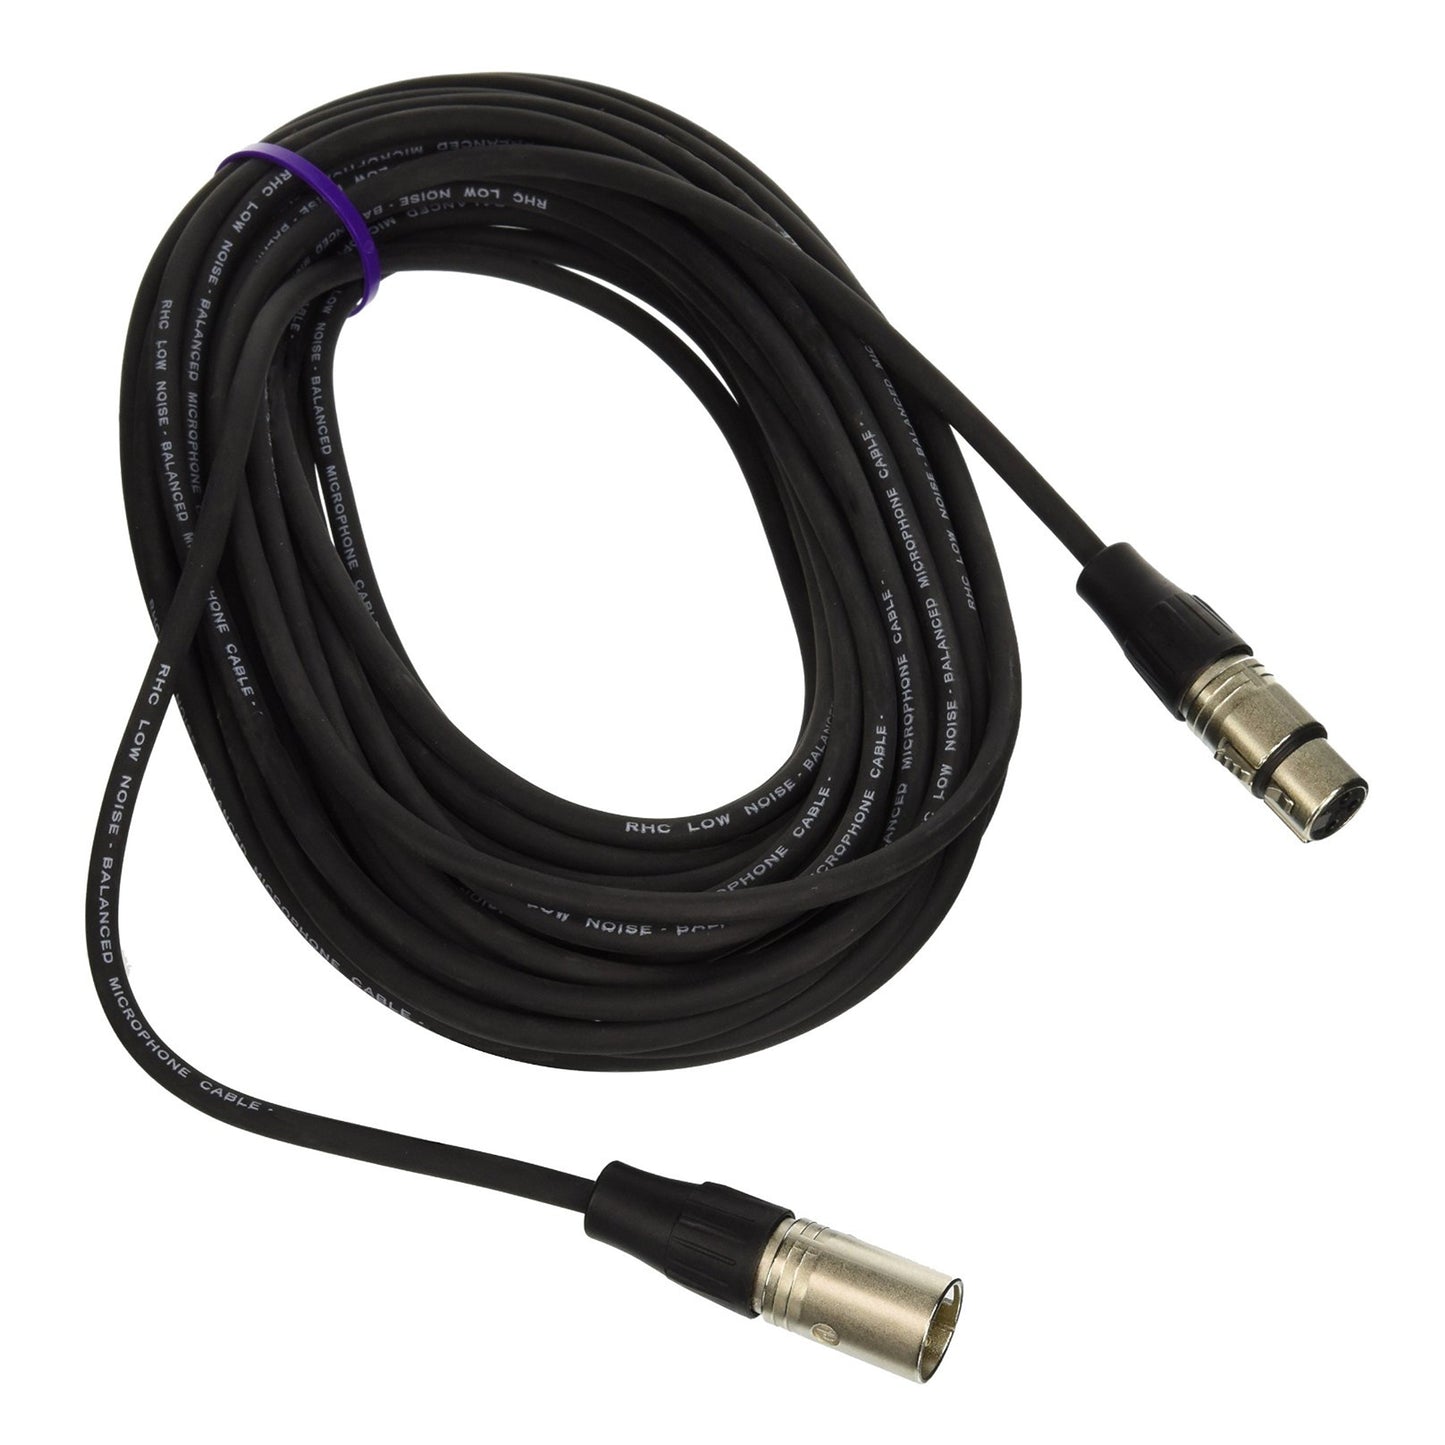 Rapco Horizon N1M1-50 Stage Series M1 Microphone Cable Neutrik Connectors 50-Ft